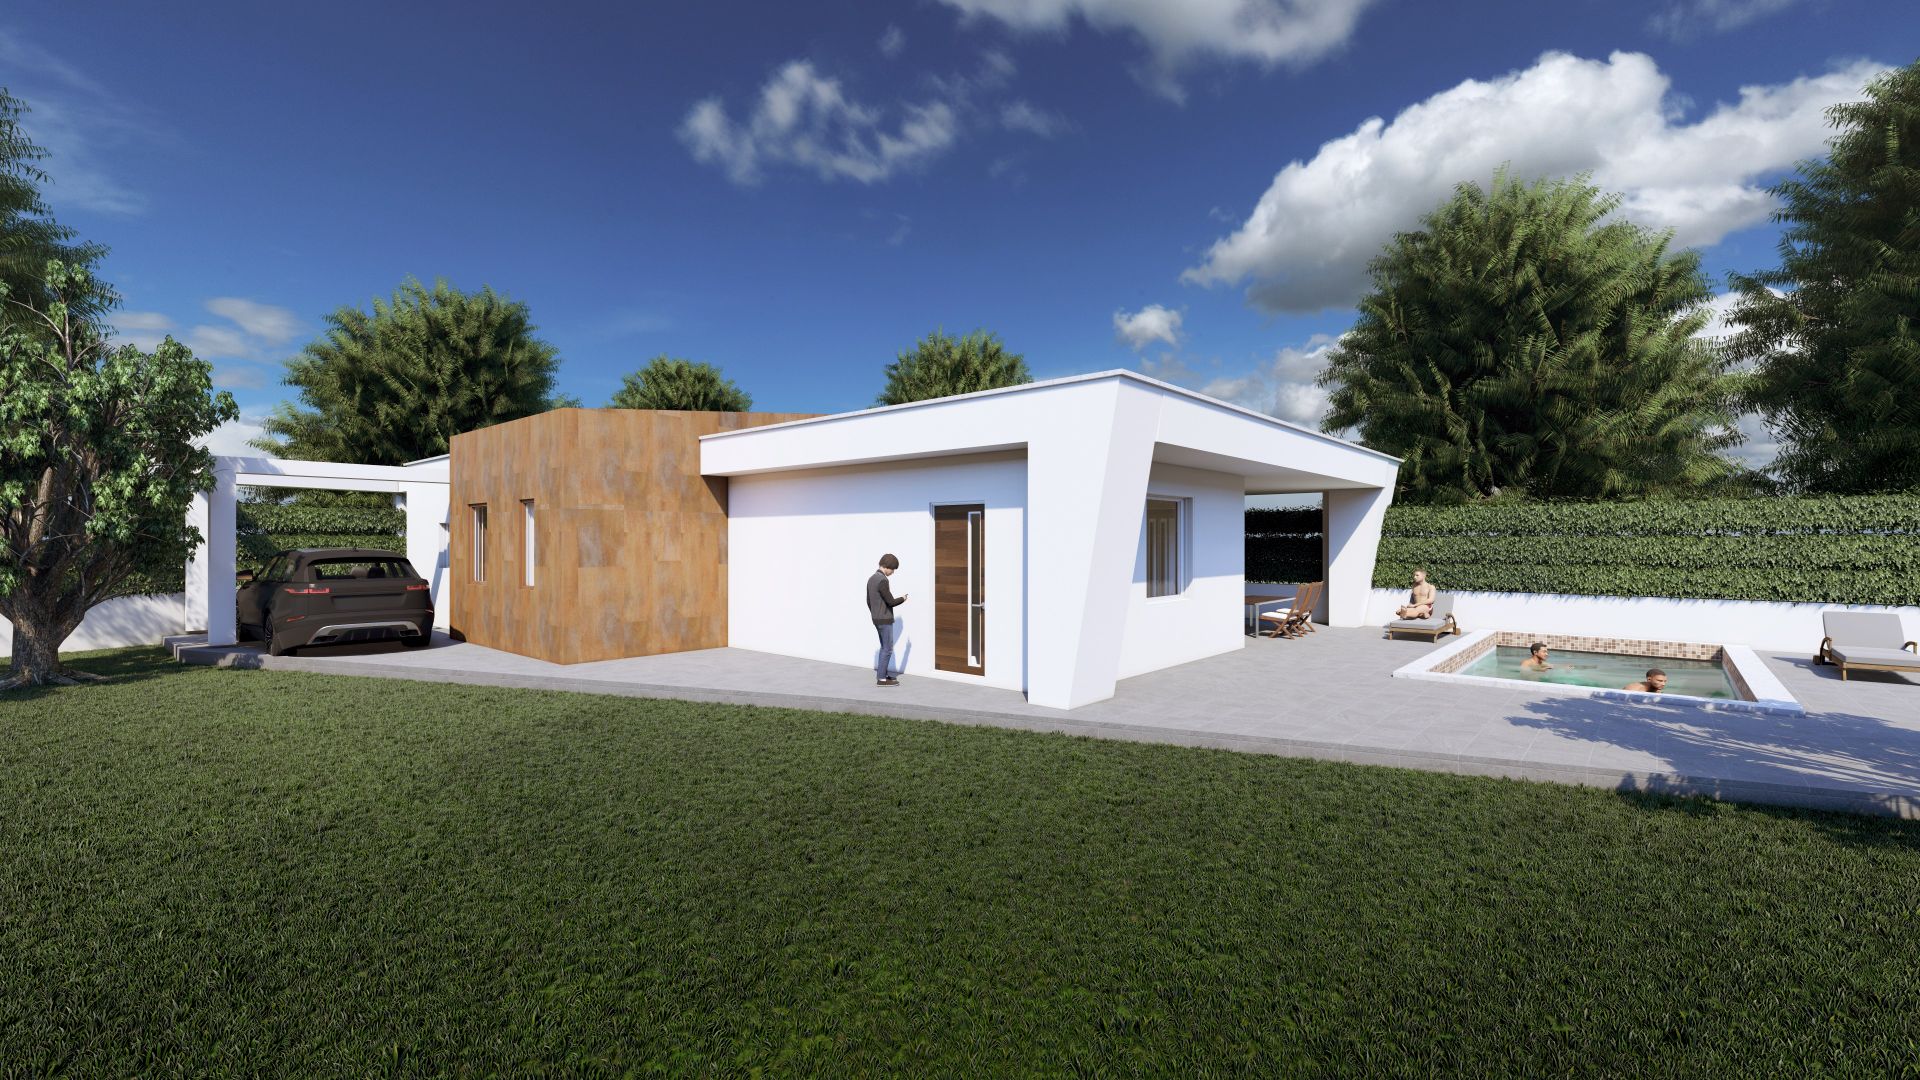 Progetto di una villa unifamiliare realizzato da Paolo Cara,  a Guidonia Montecelio